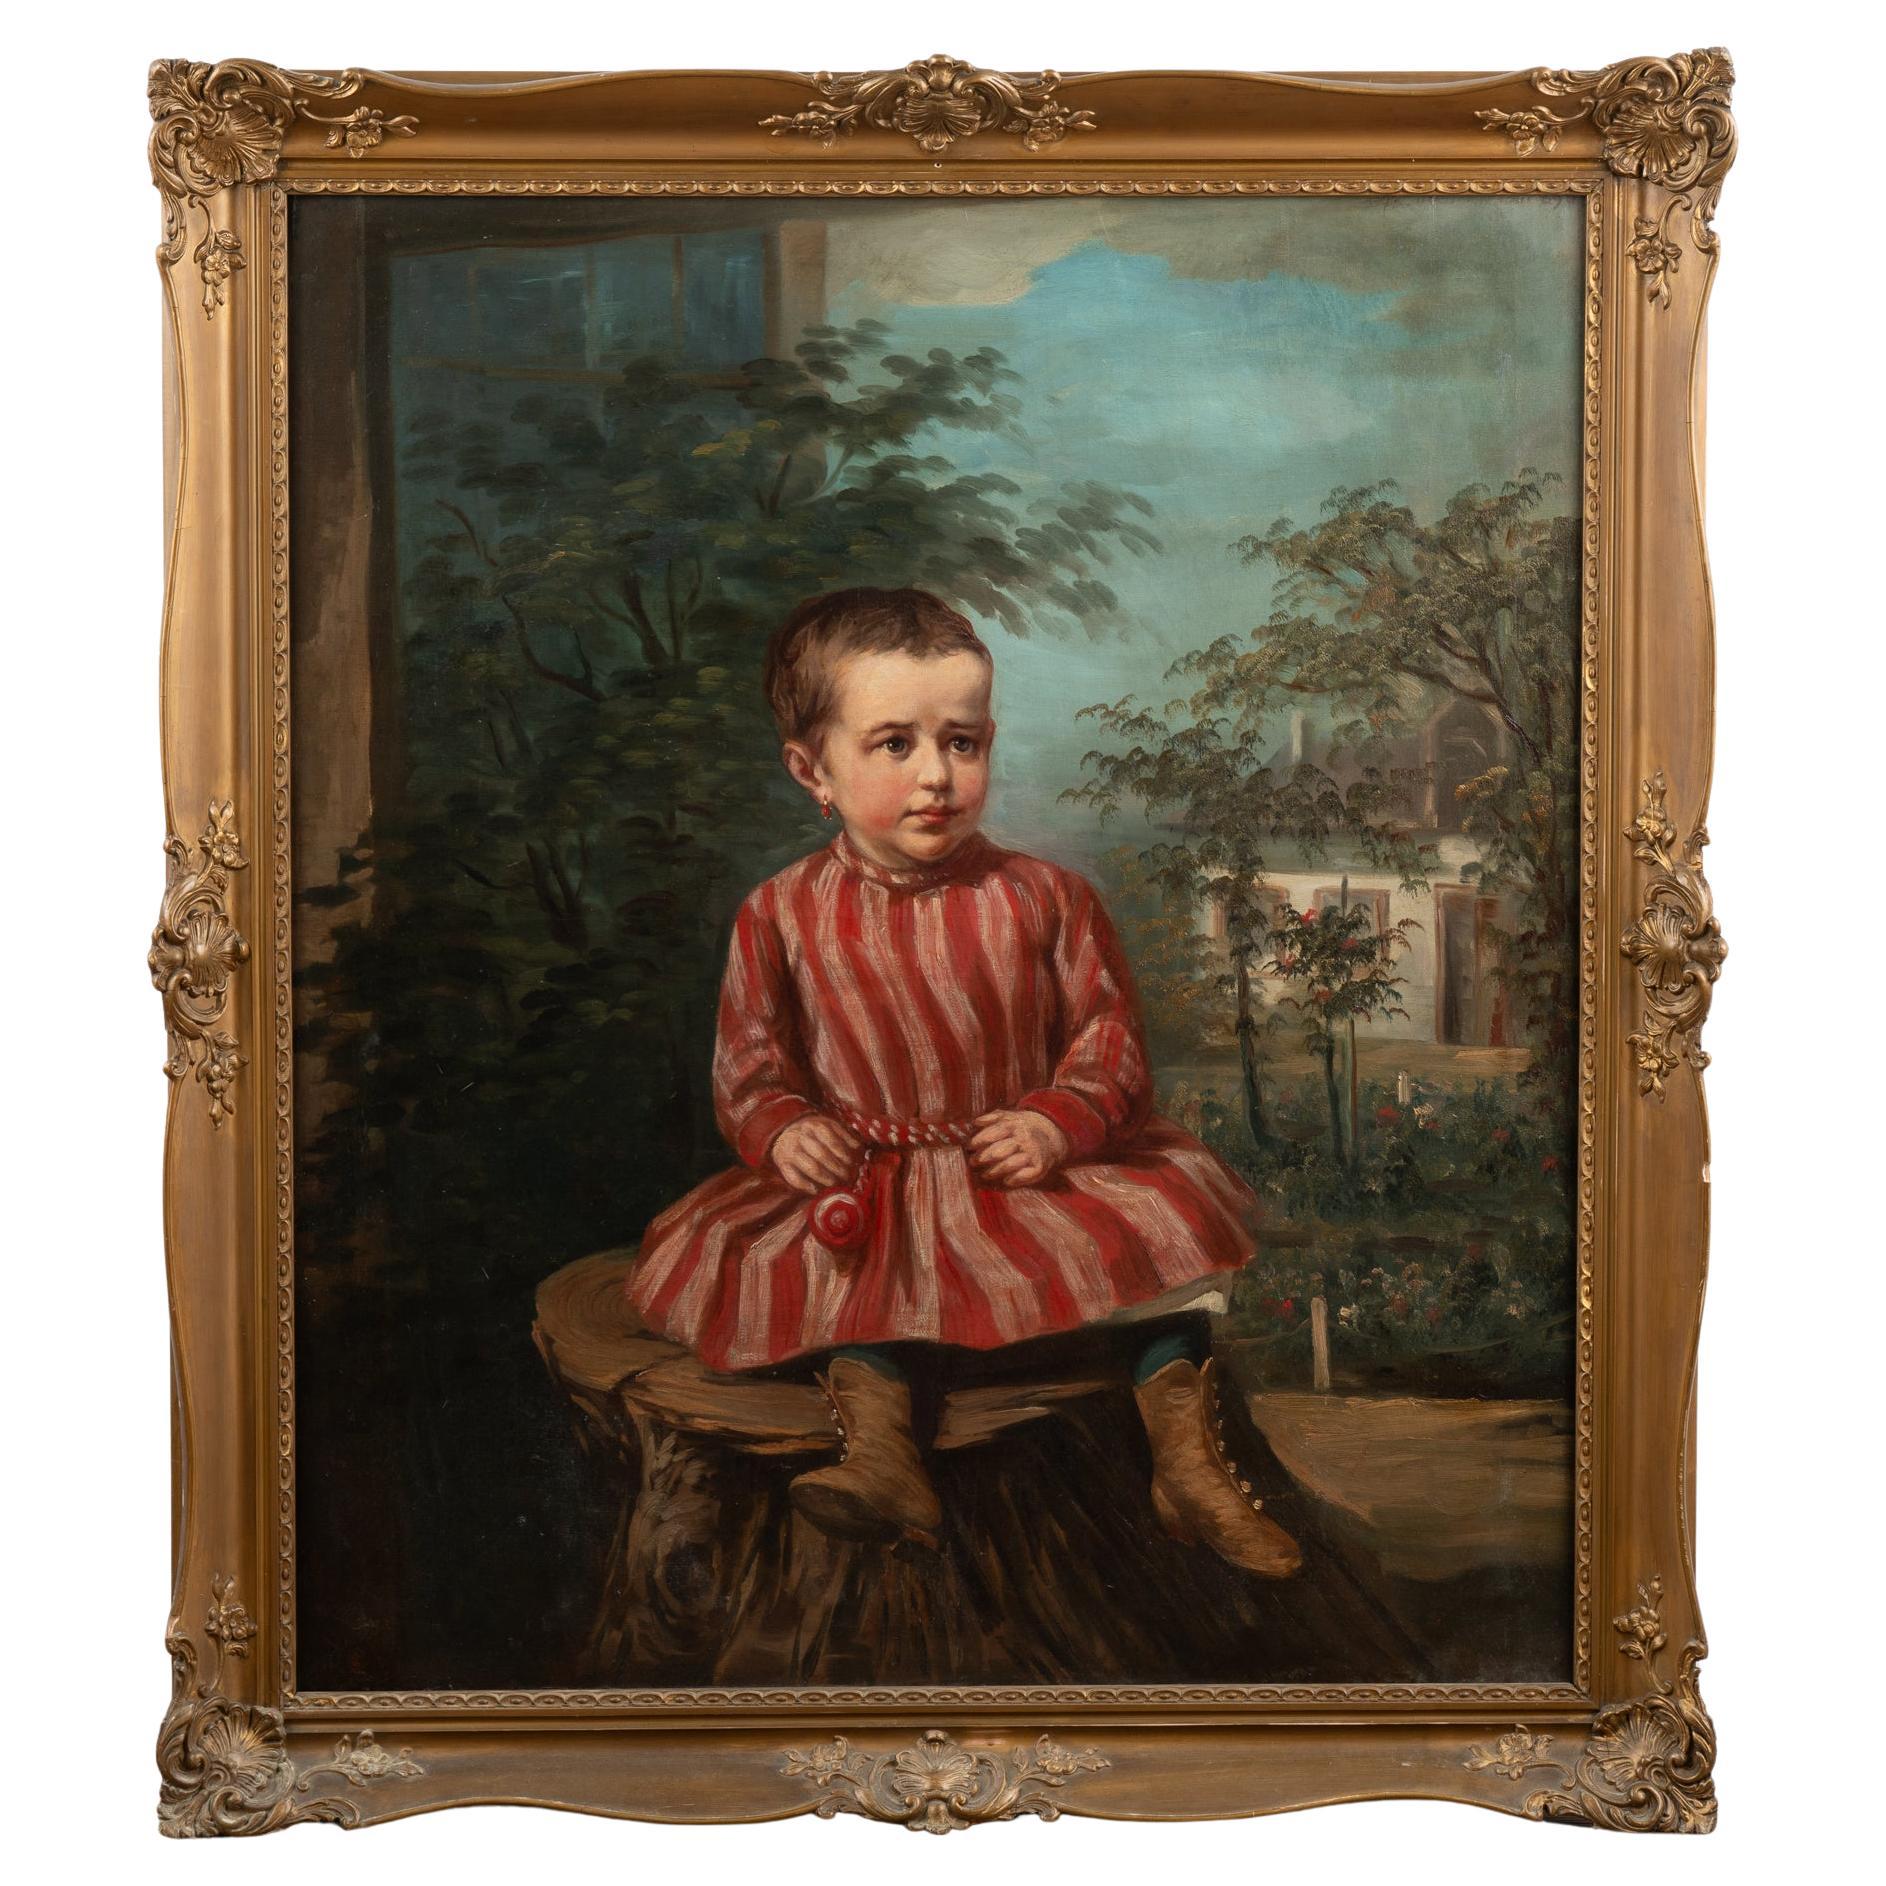 Original Öl auf Leinwand Gemälde von jungen Mädchen, Ungarn um 1890